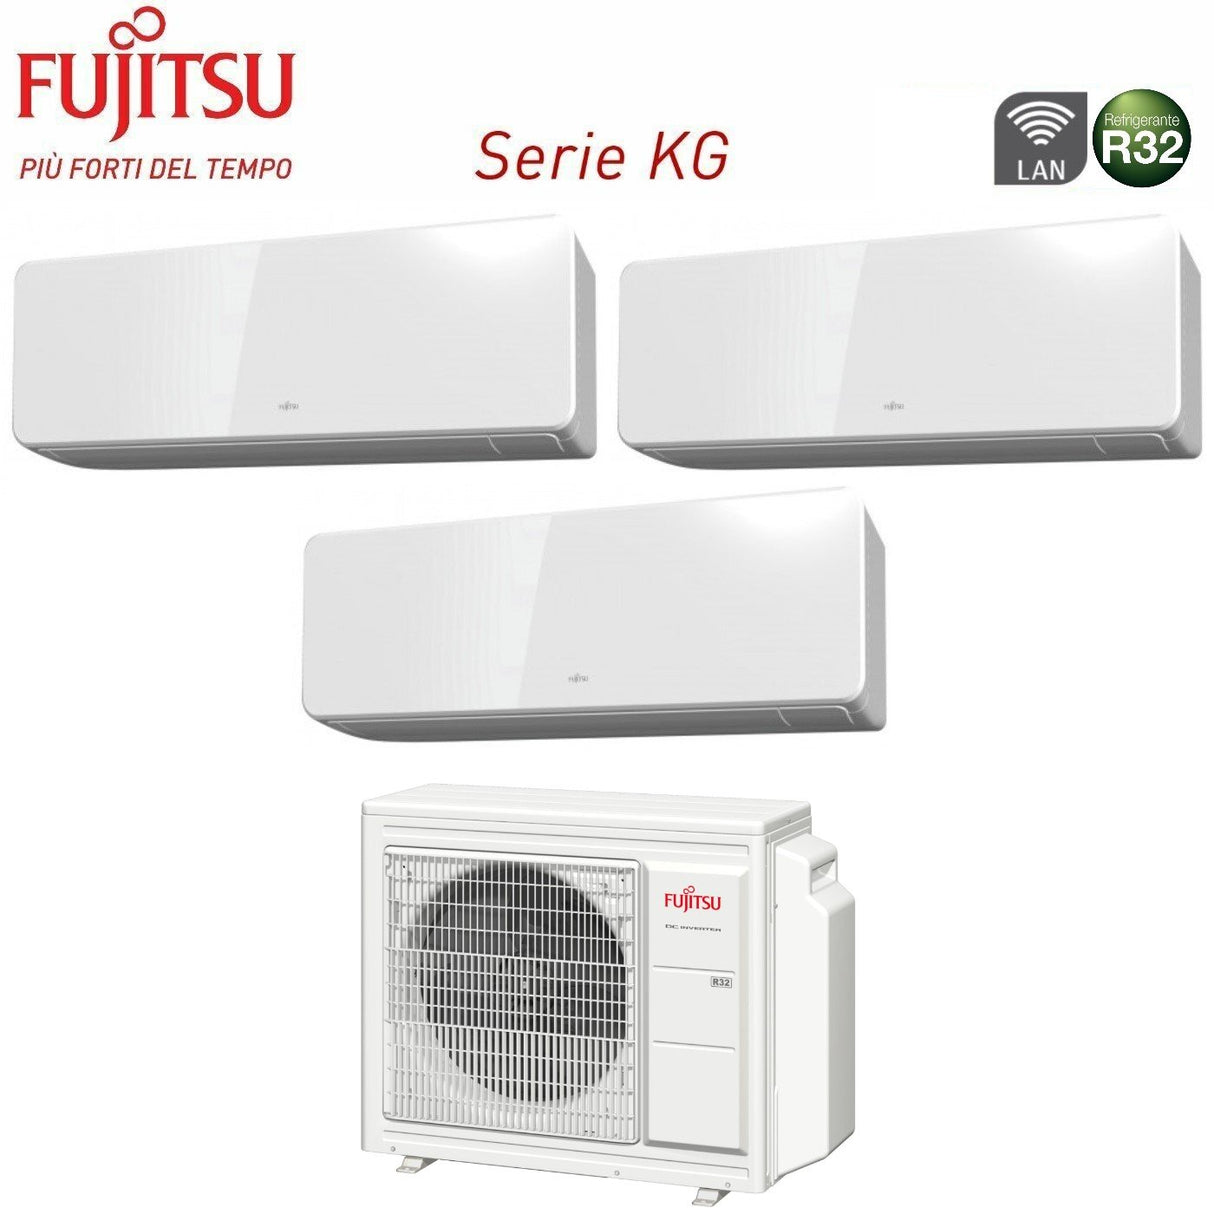 immagine-2-fujitsu-climatizzatore-condizionatore-fujitsu-trial-split-inverter-serie-kg-9912-con-aoyg24kbta3-r-32-wi-fi-integrato-9000900012000